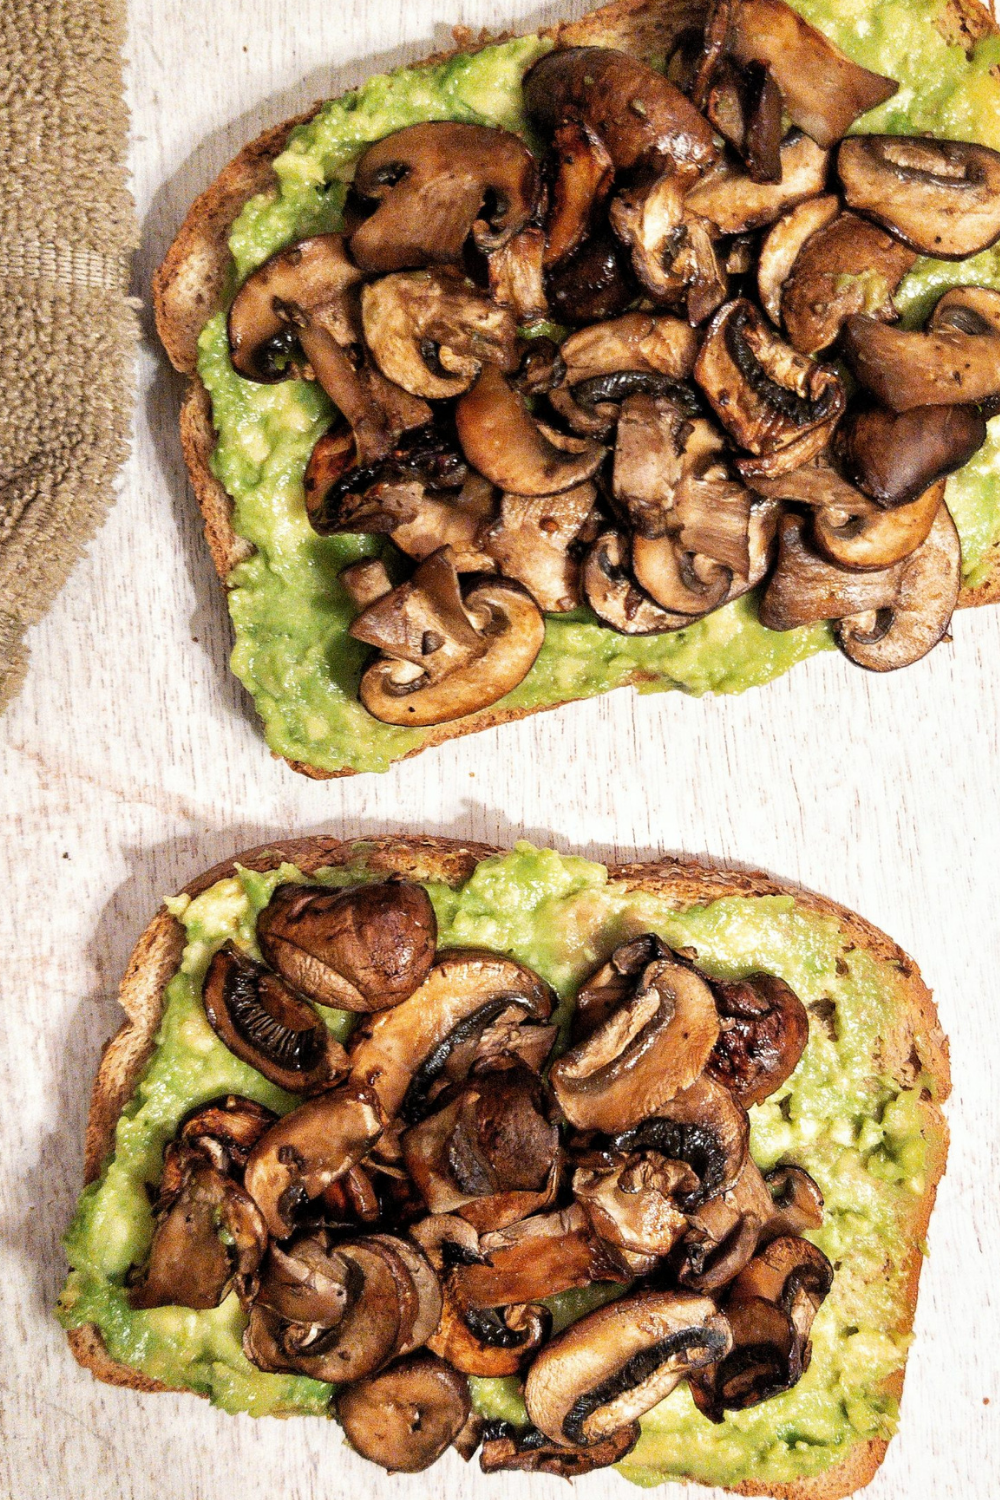 Sliced, cooked mushrooms on avocado toast. 